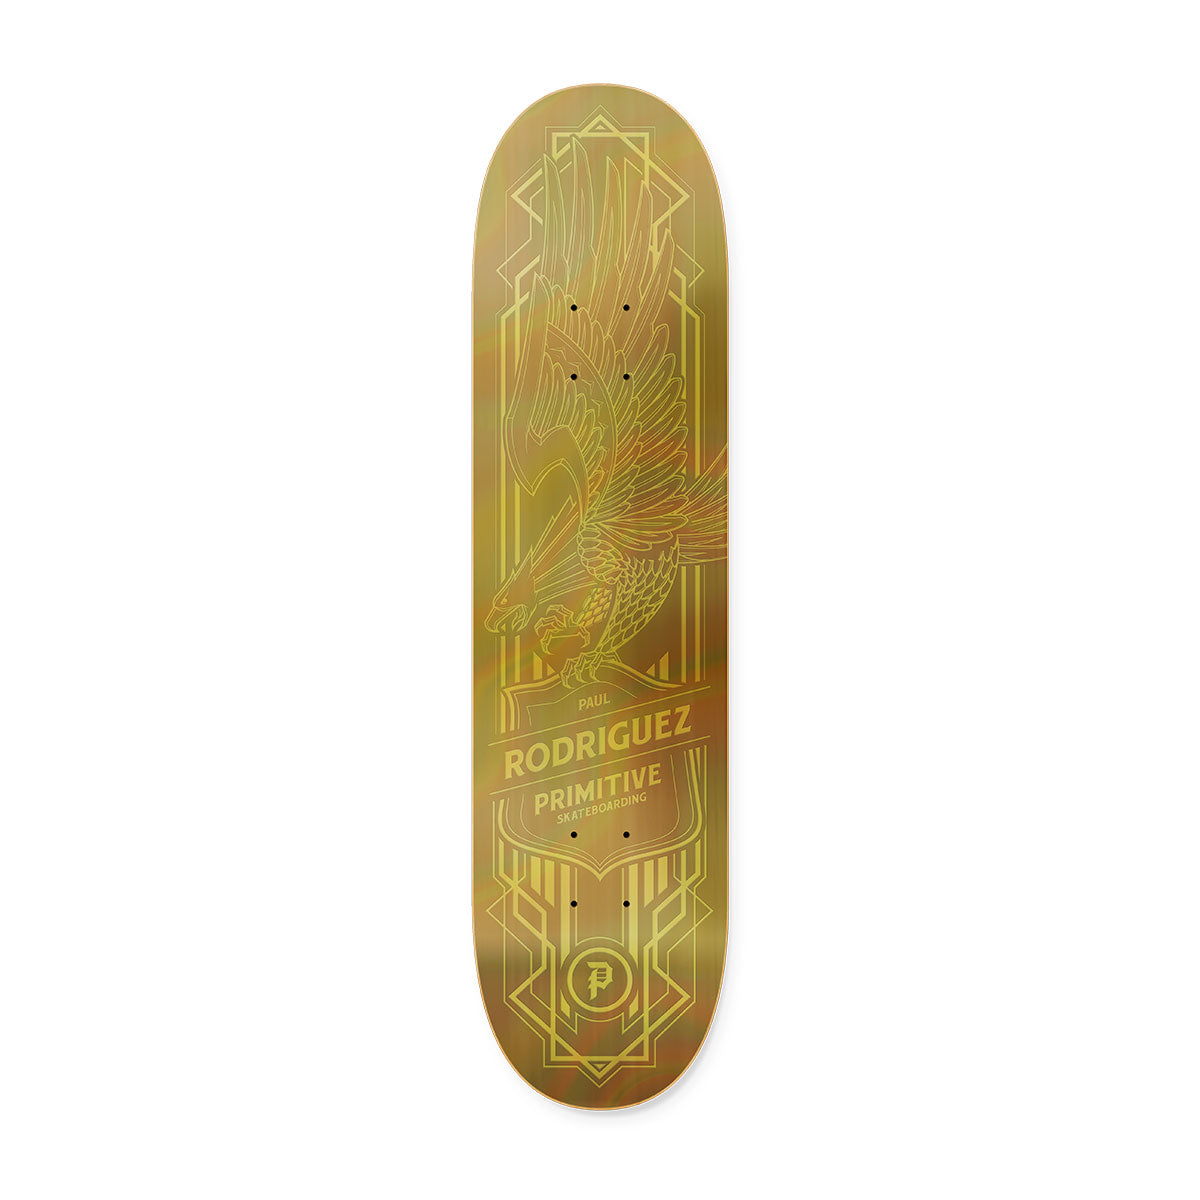 SALE– Primitive Skateboarding